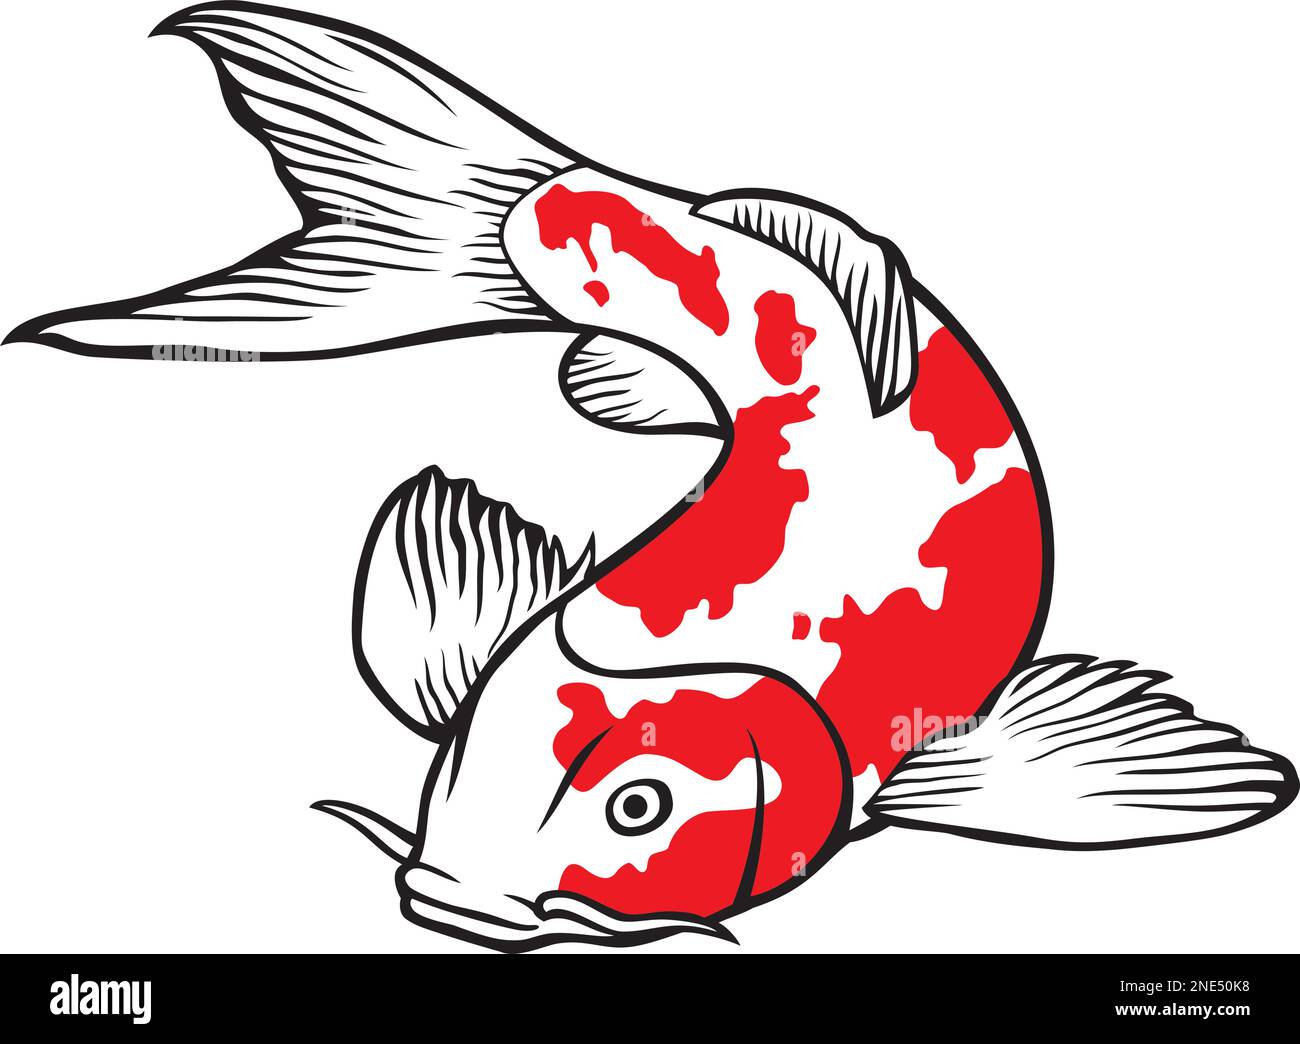 Vektordarstellung eines japanischen oder chinesisch inspirierten Koi-Karpfenfischs Stock Vektor